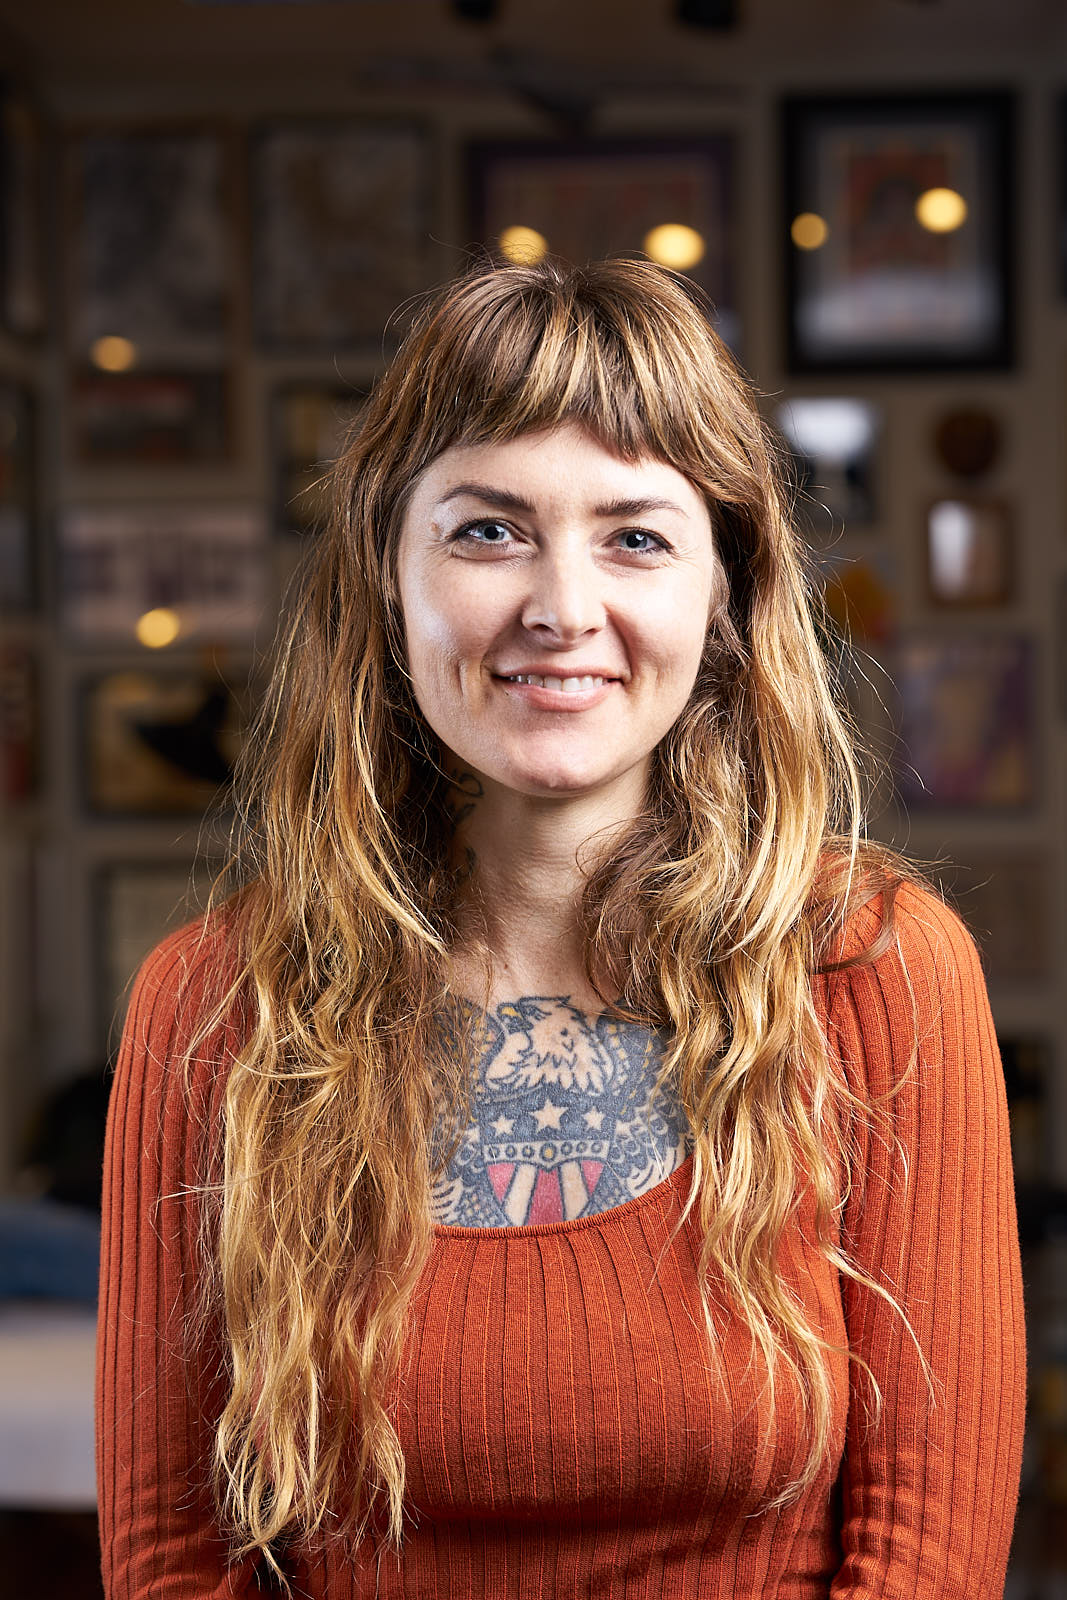 Jennalee Mahan Portrait - Tattooer at Great Wave Tattoo